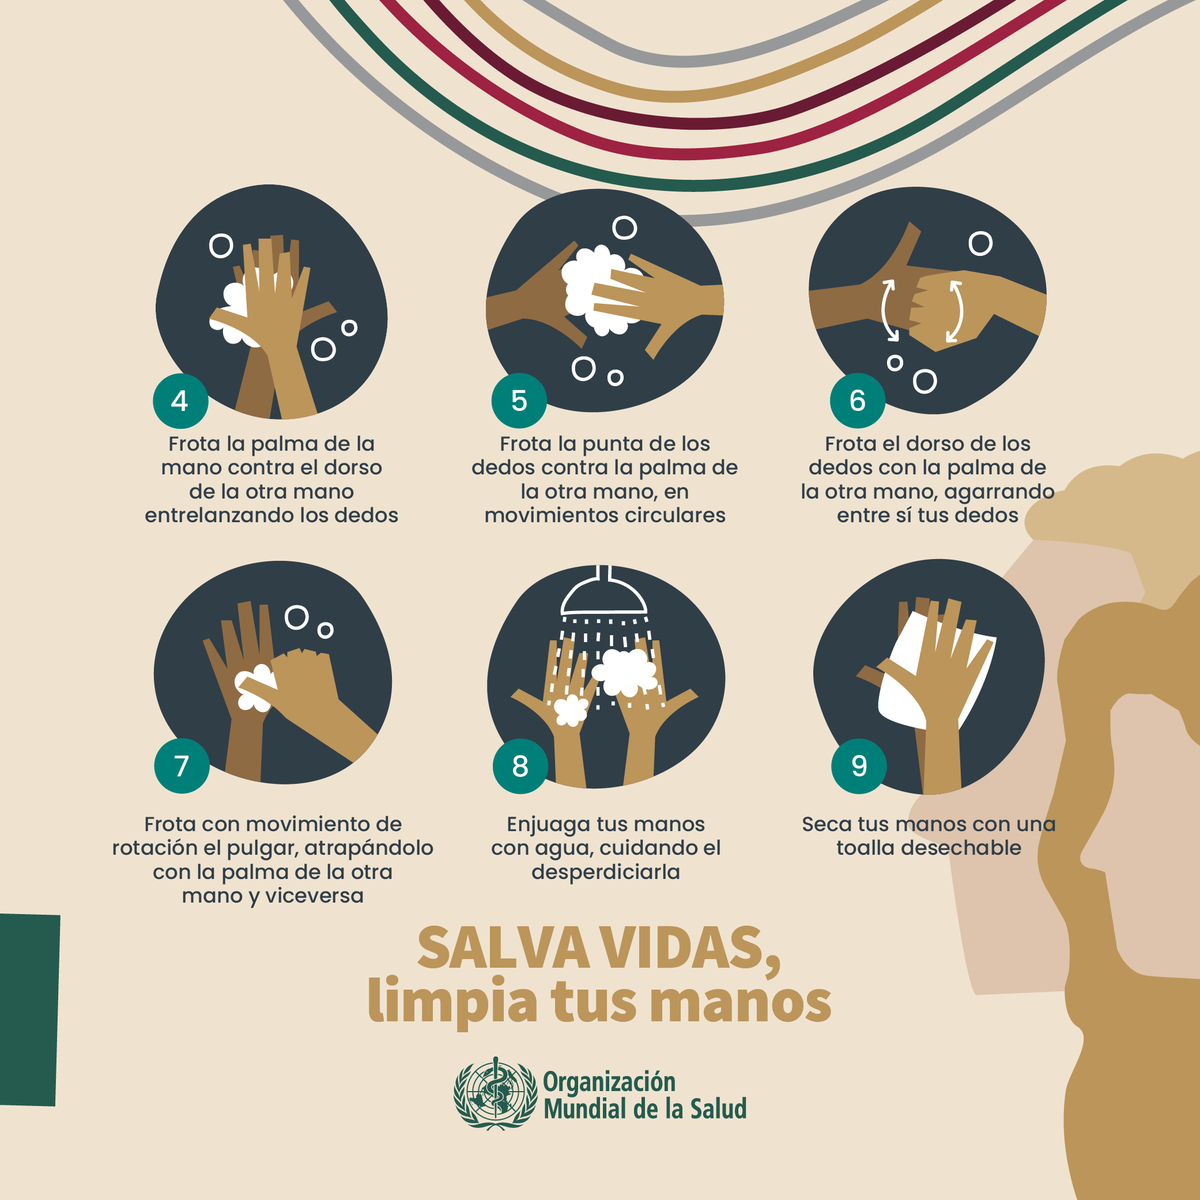 Este próximo 5 de mayo se conmemora el Día Mundial de la #HigieneDeManos
La higiene de manos con agua y jabón y/o soluciones de alcohol en gel, representa una de las medidas de prevención de infecciones y de contagio de enfermedades, más efectiva.
¡Fomentemos #HábitosSaludables!